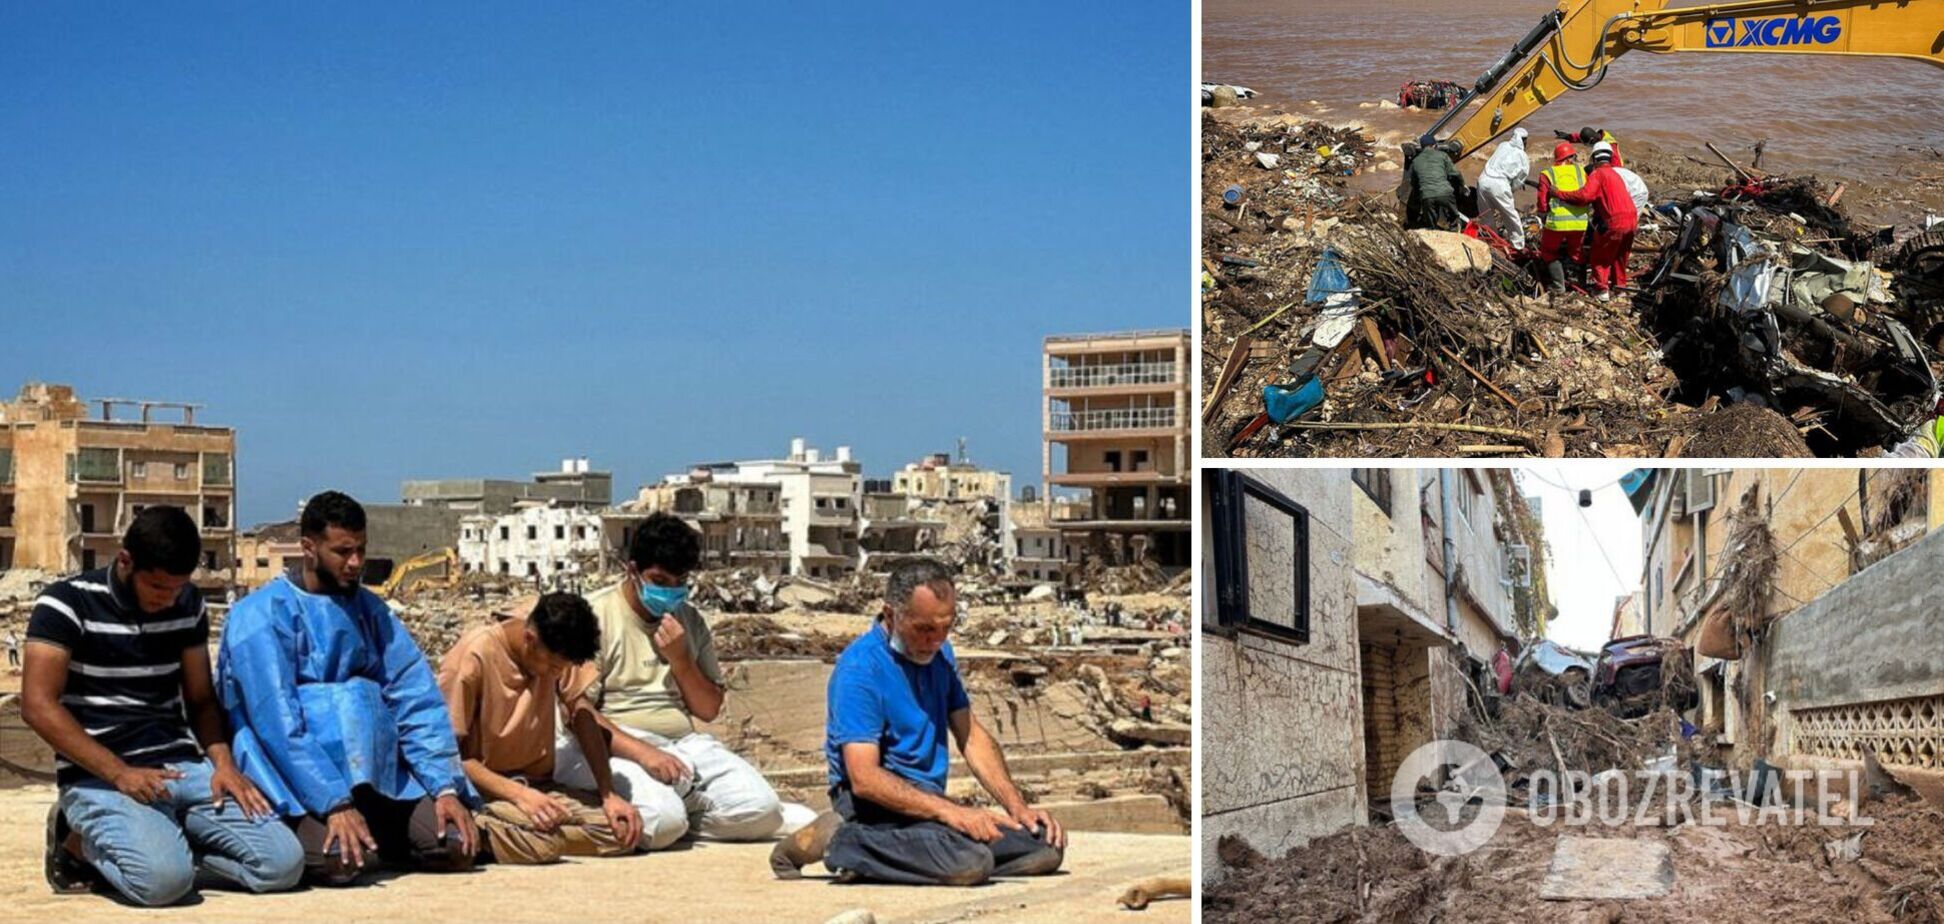 Почти 40 тысяч жителей Ливии стали перемещенными лицами из-за масштабного наводнения. Фото и видео